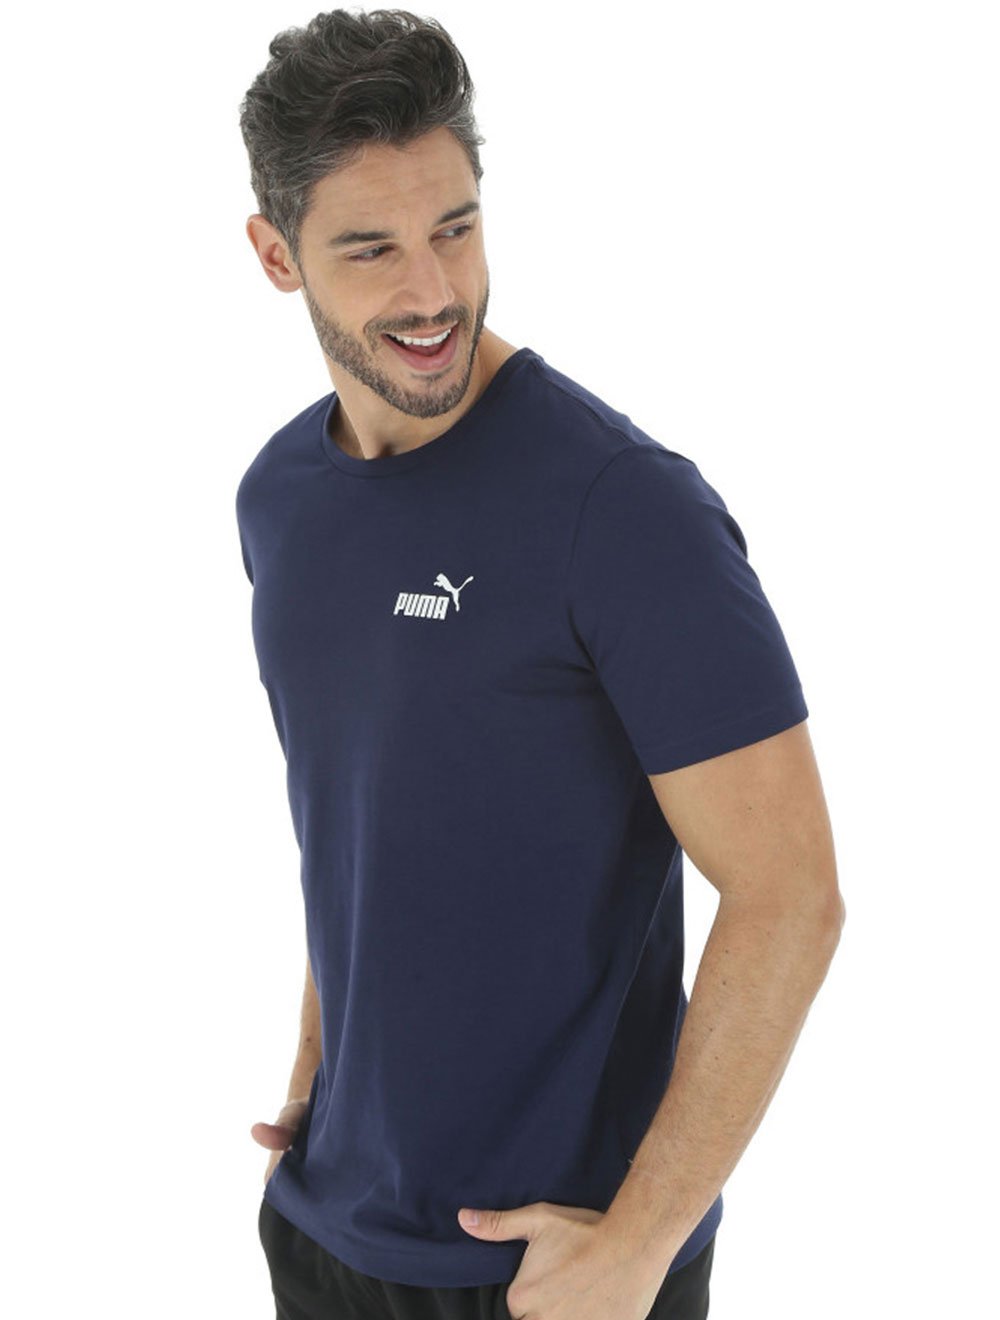 Camiseta Puma Masculina Essential Small Logo Azul Marinho